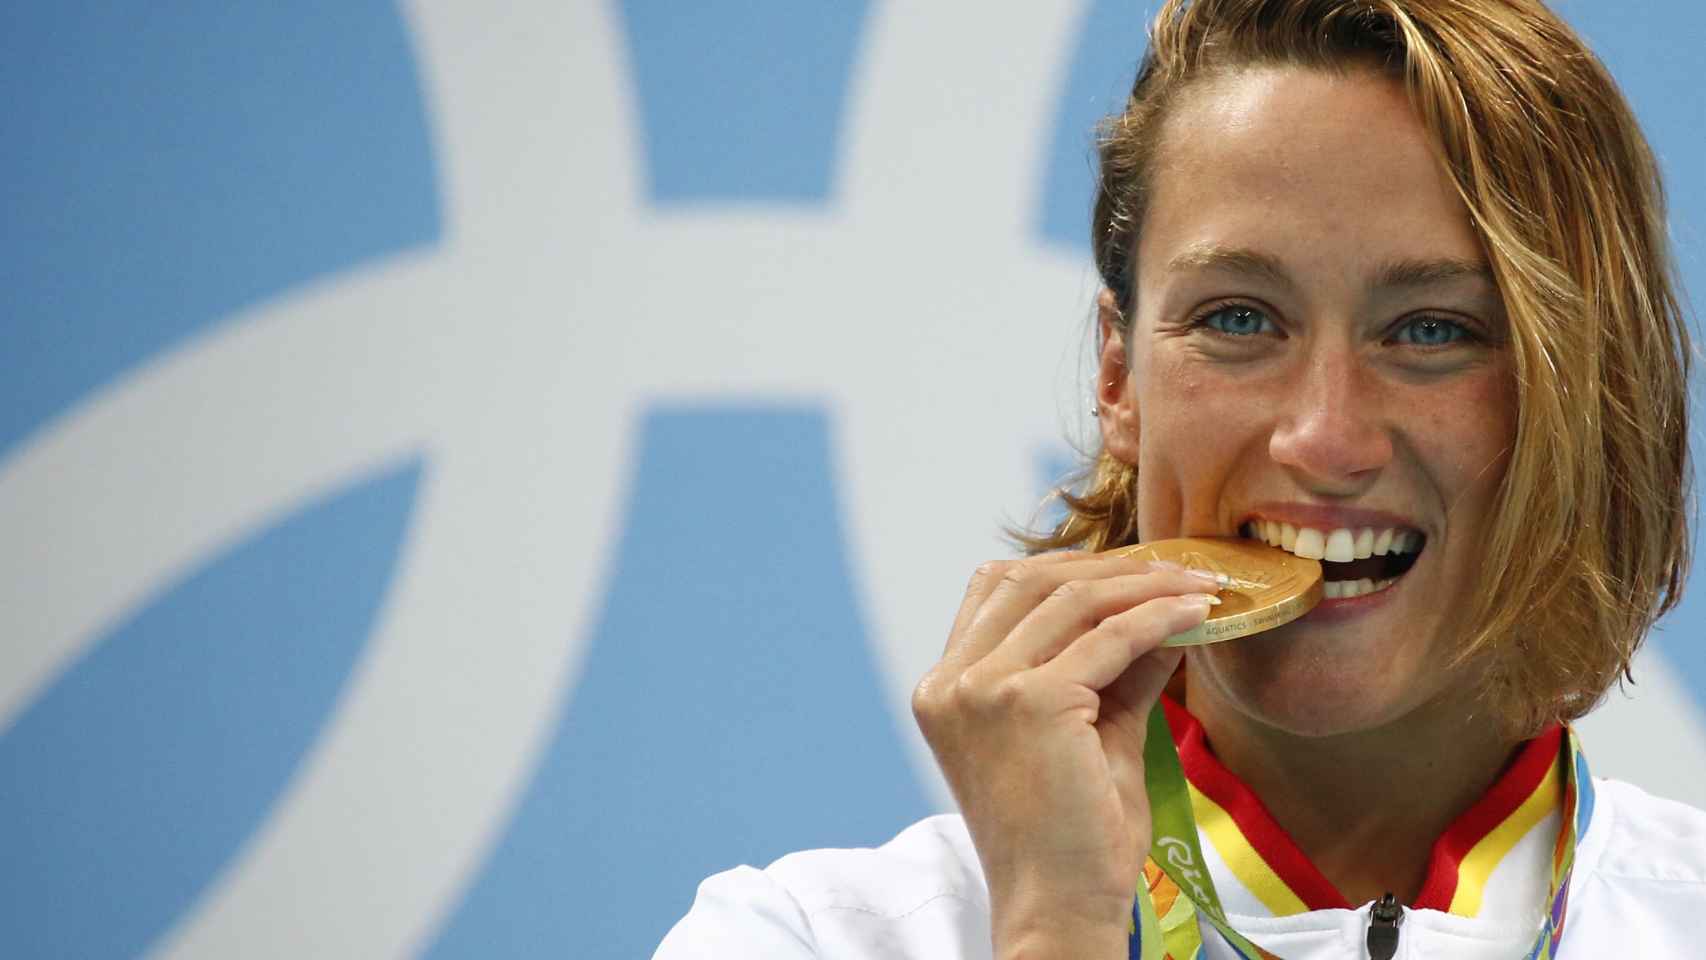 La nadadora española muerde su oro, el primero de la natación española desde Barcelona'92.